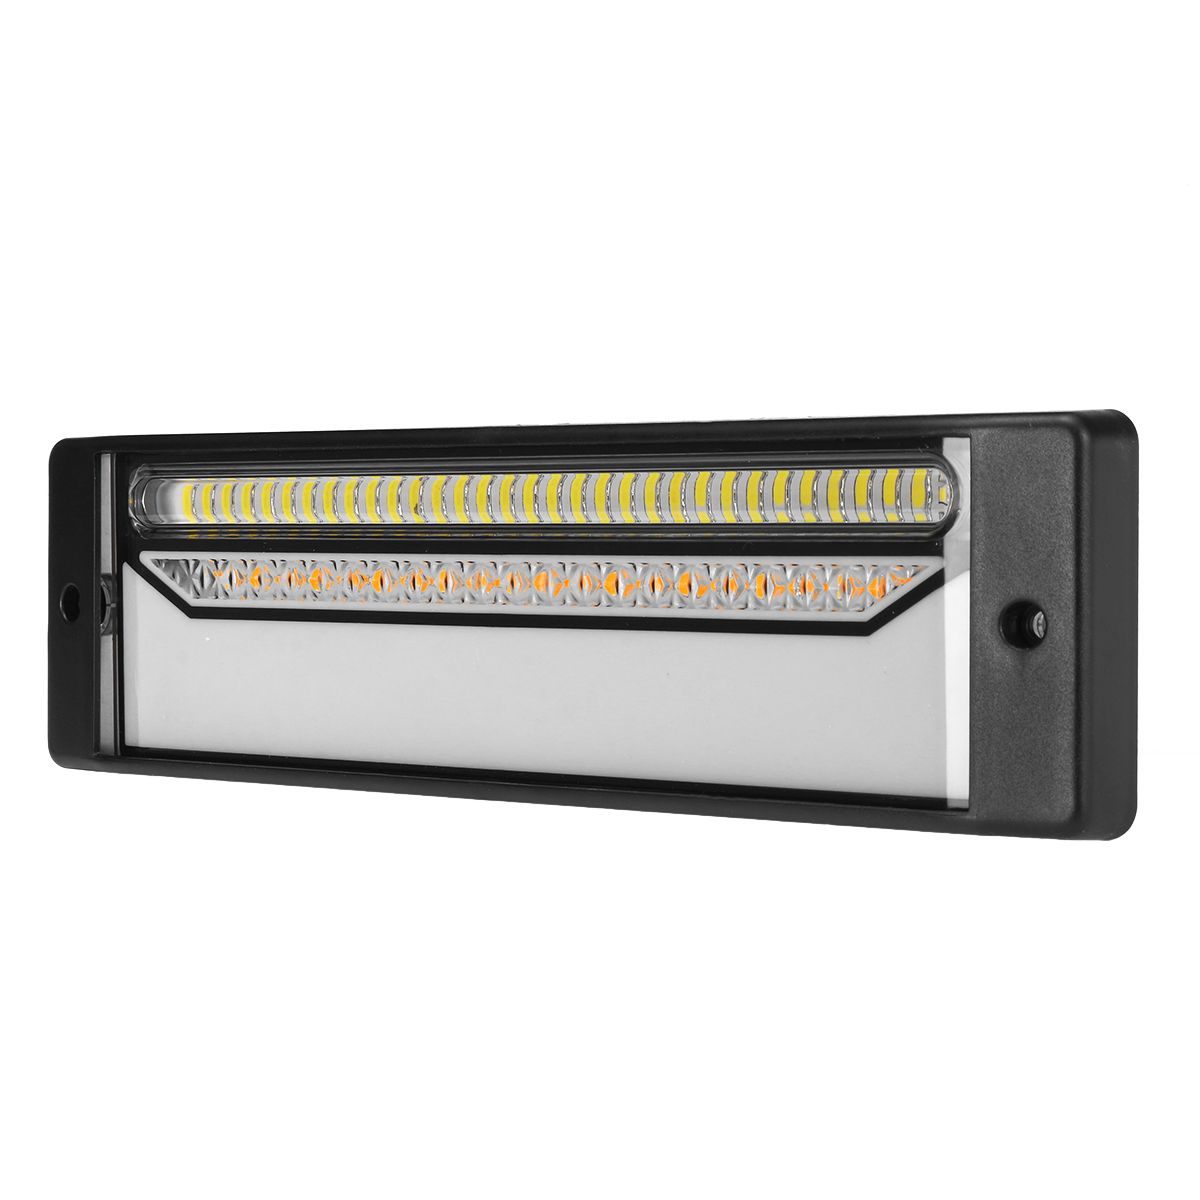 Car-Multi-functional-LED-Light-Bar-Stop-Turn-Tail-3rd-Brake-Light-For-Truck-Trailer-1658737